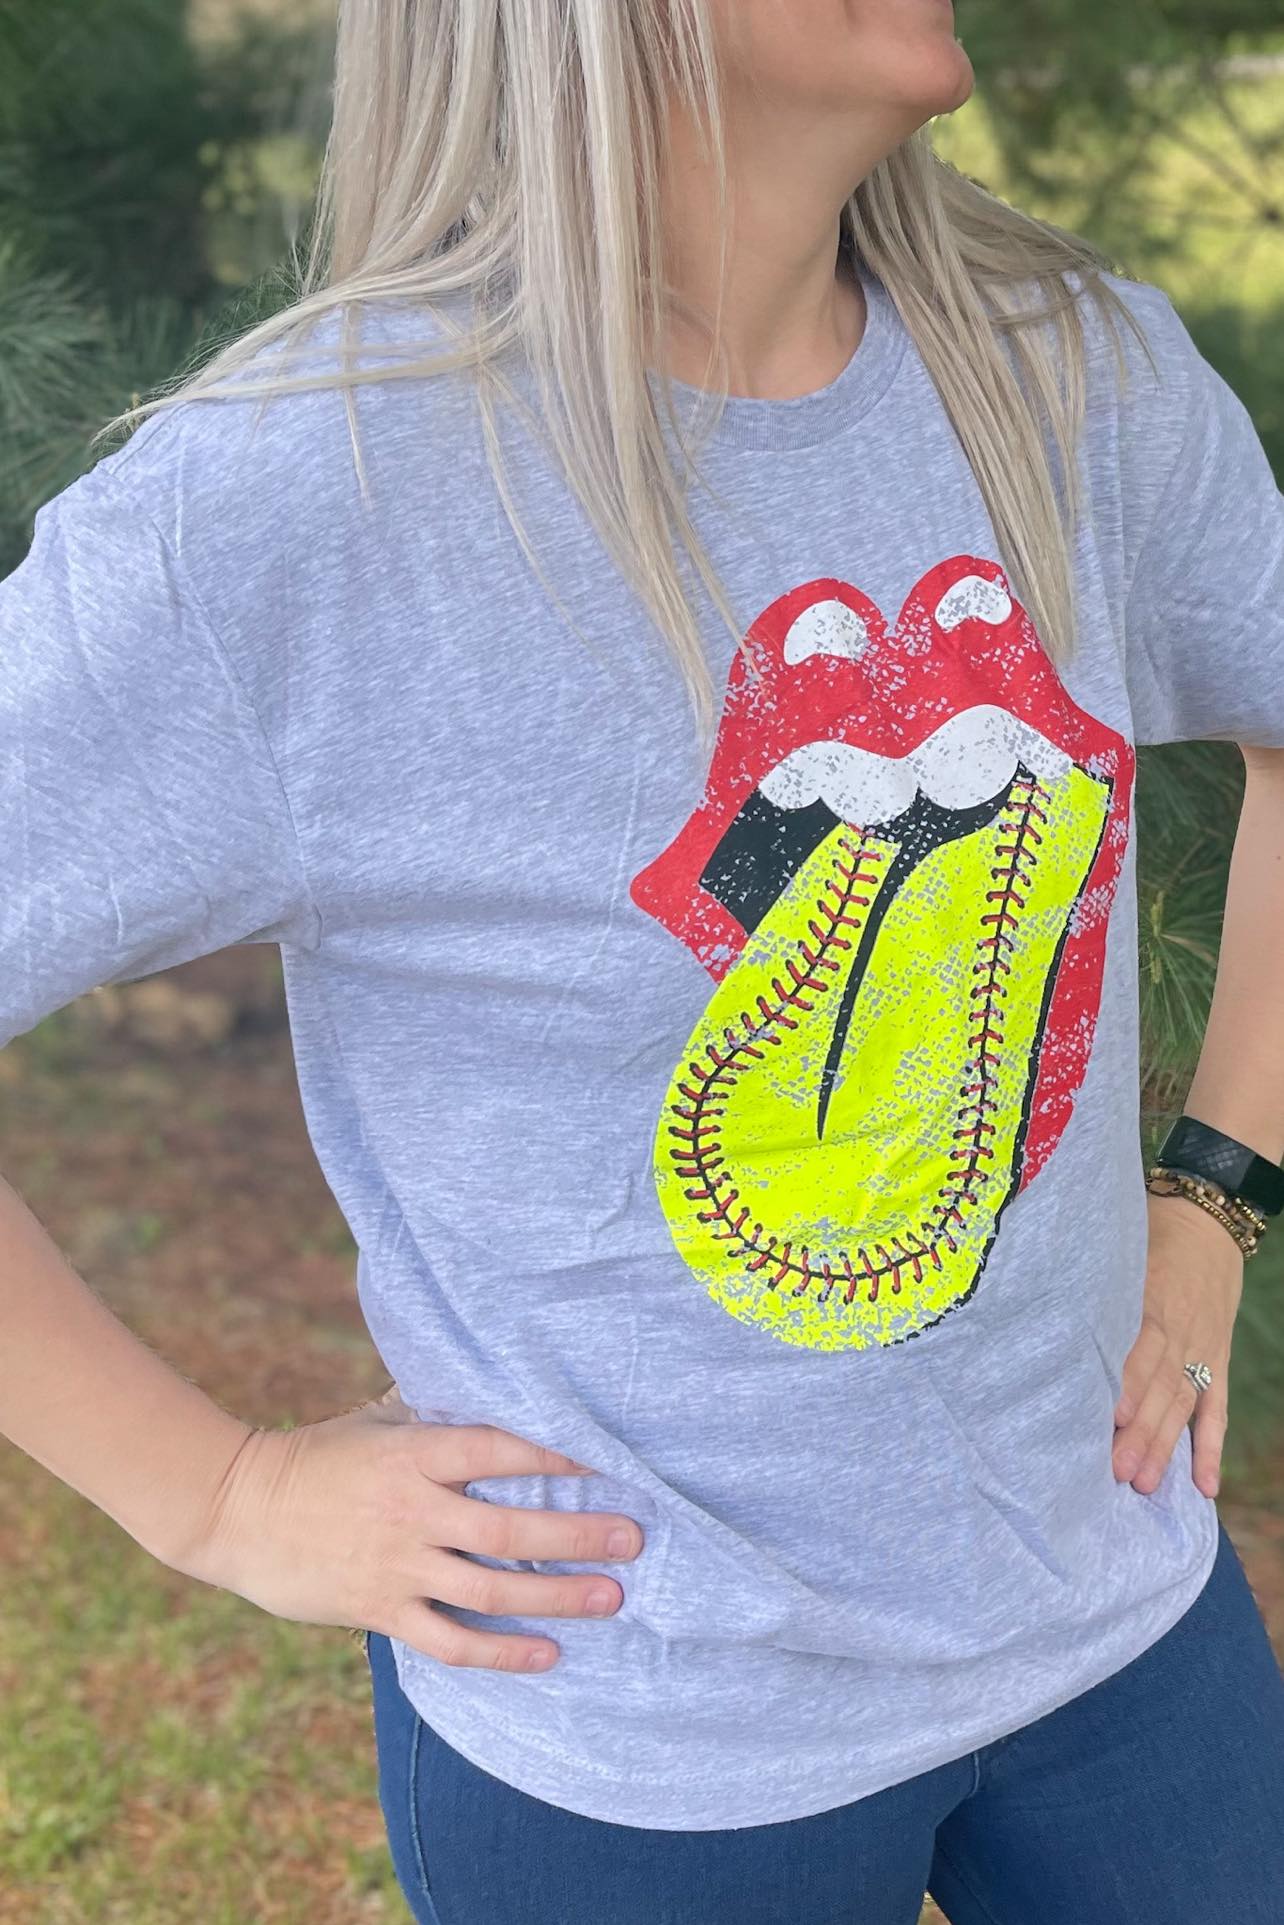 [Softball Rocker] Tee Shirt